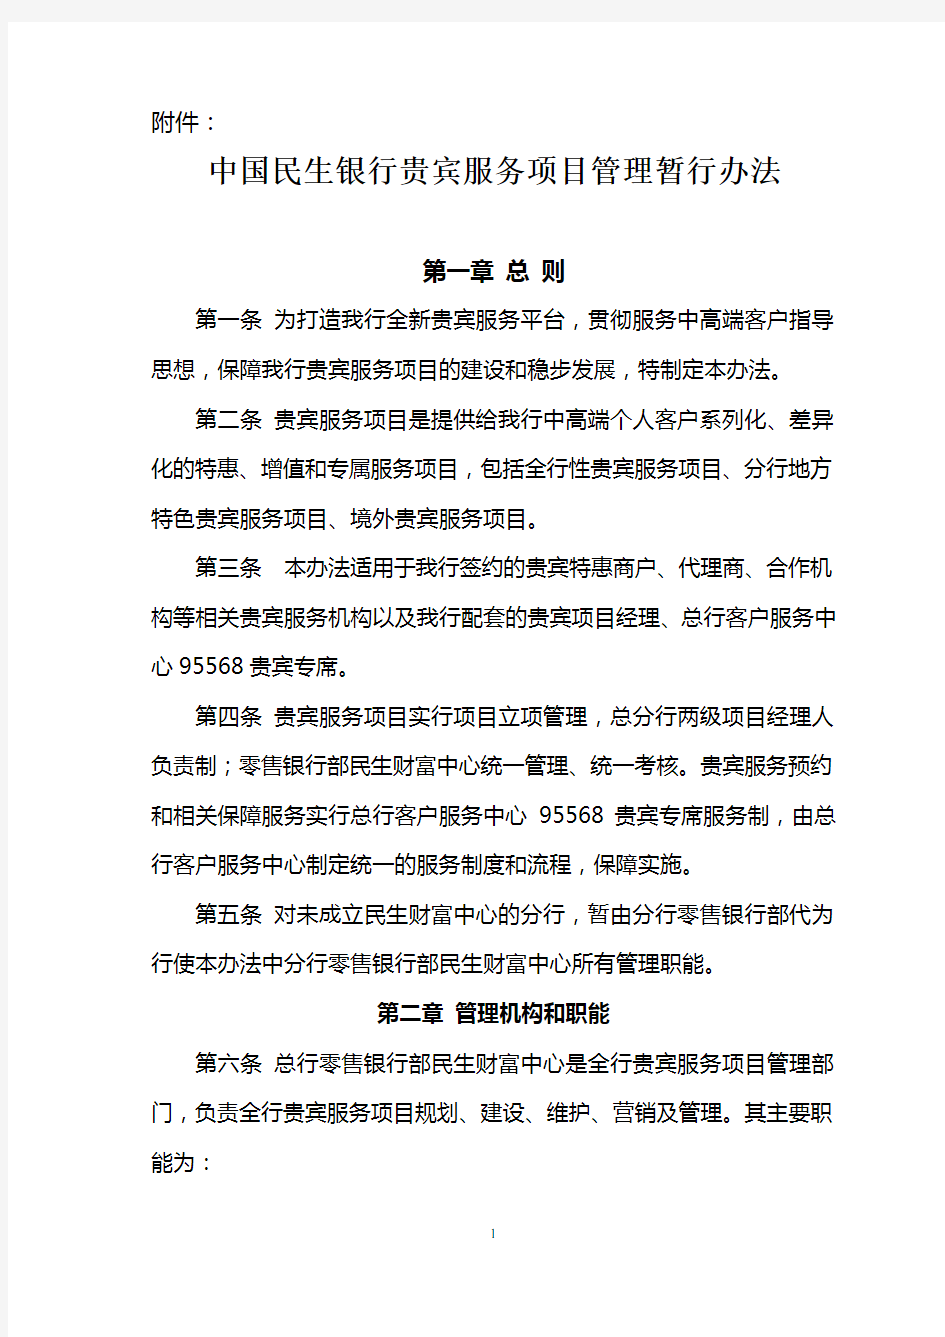 中国民生银行贵宾服务项目管理暂行办法